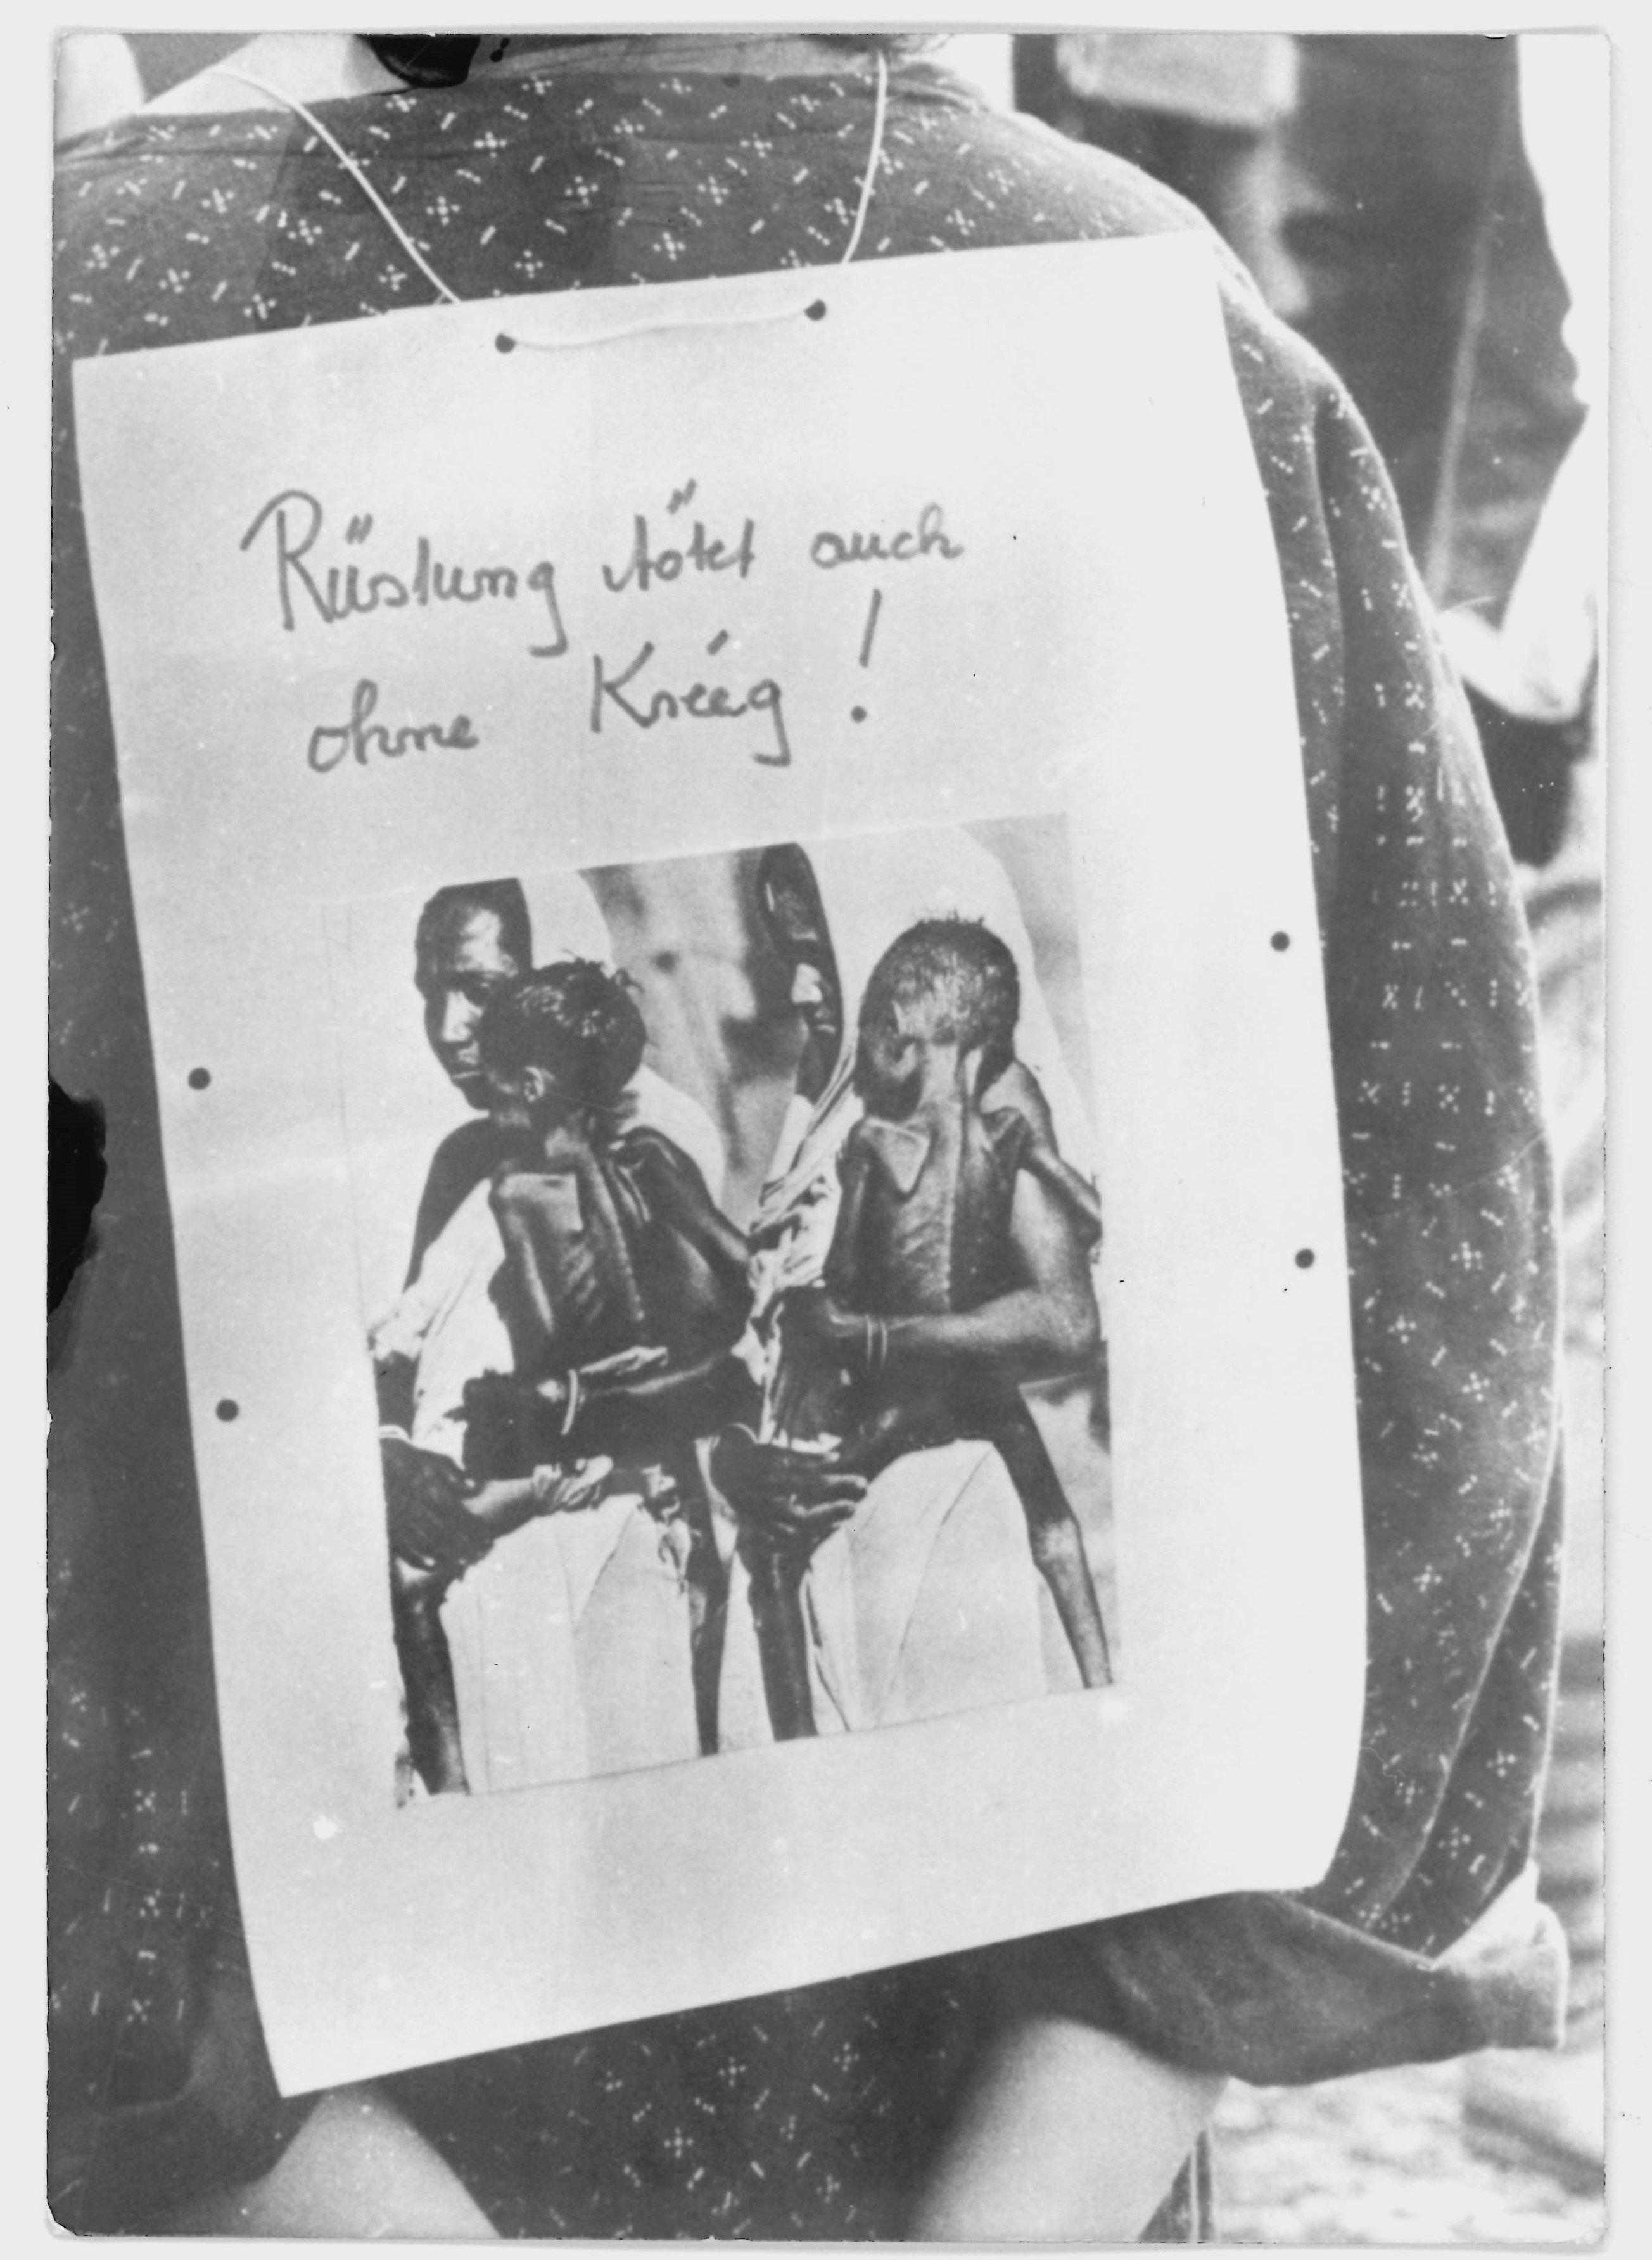 Olof-Palme-Marsch 1987: Teilnehmerin mit einer Fotografie und dem Spruch: "Rüstung tötet auch ohne Krieg" (DDR Geschichtsmuseum im Dokumentationszentrum Perleberg CC BY-SA)